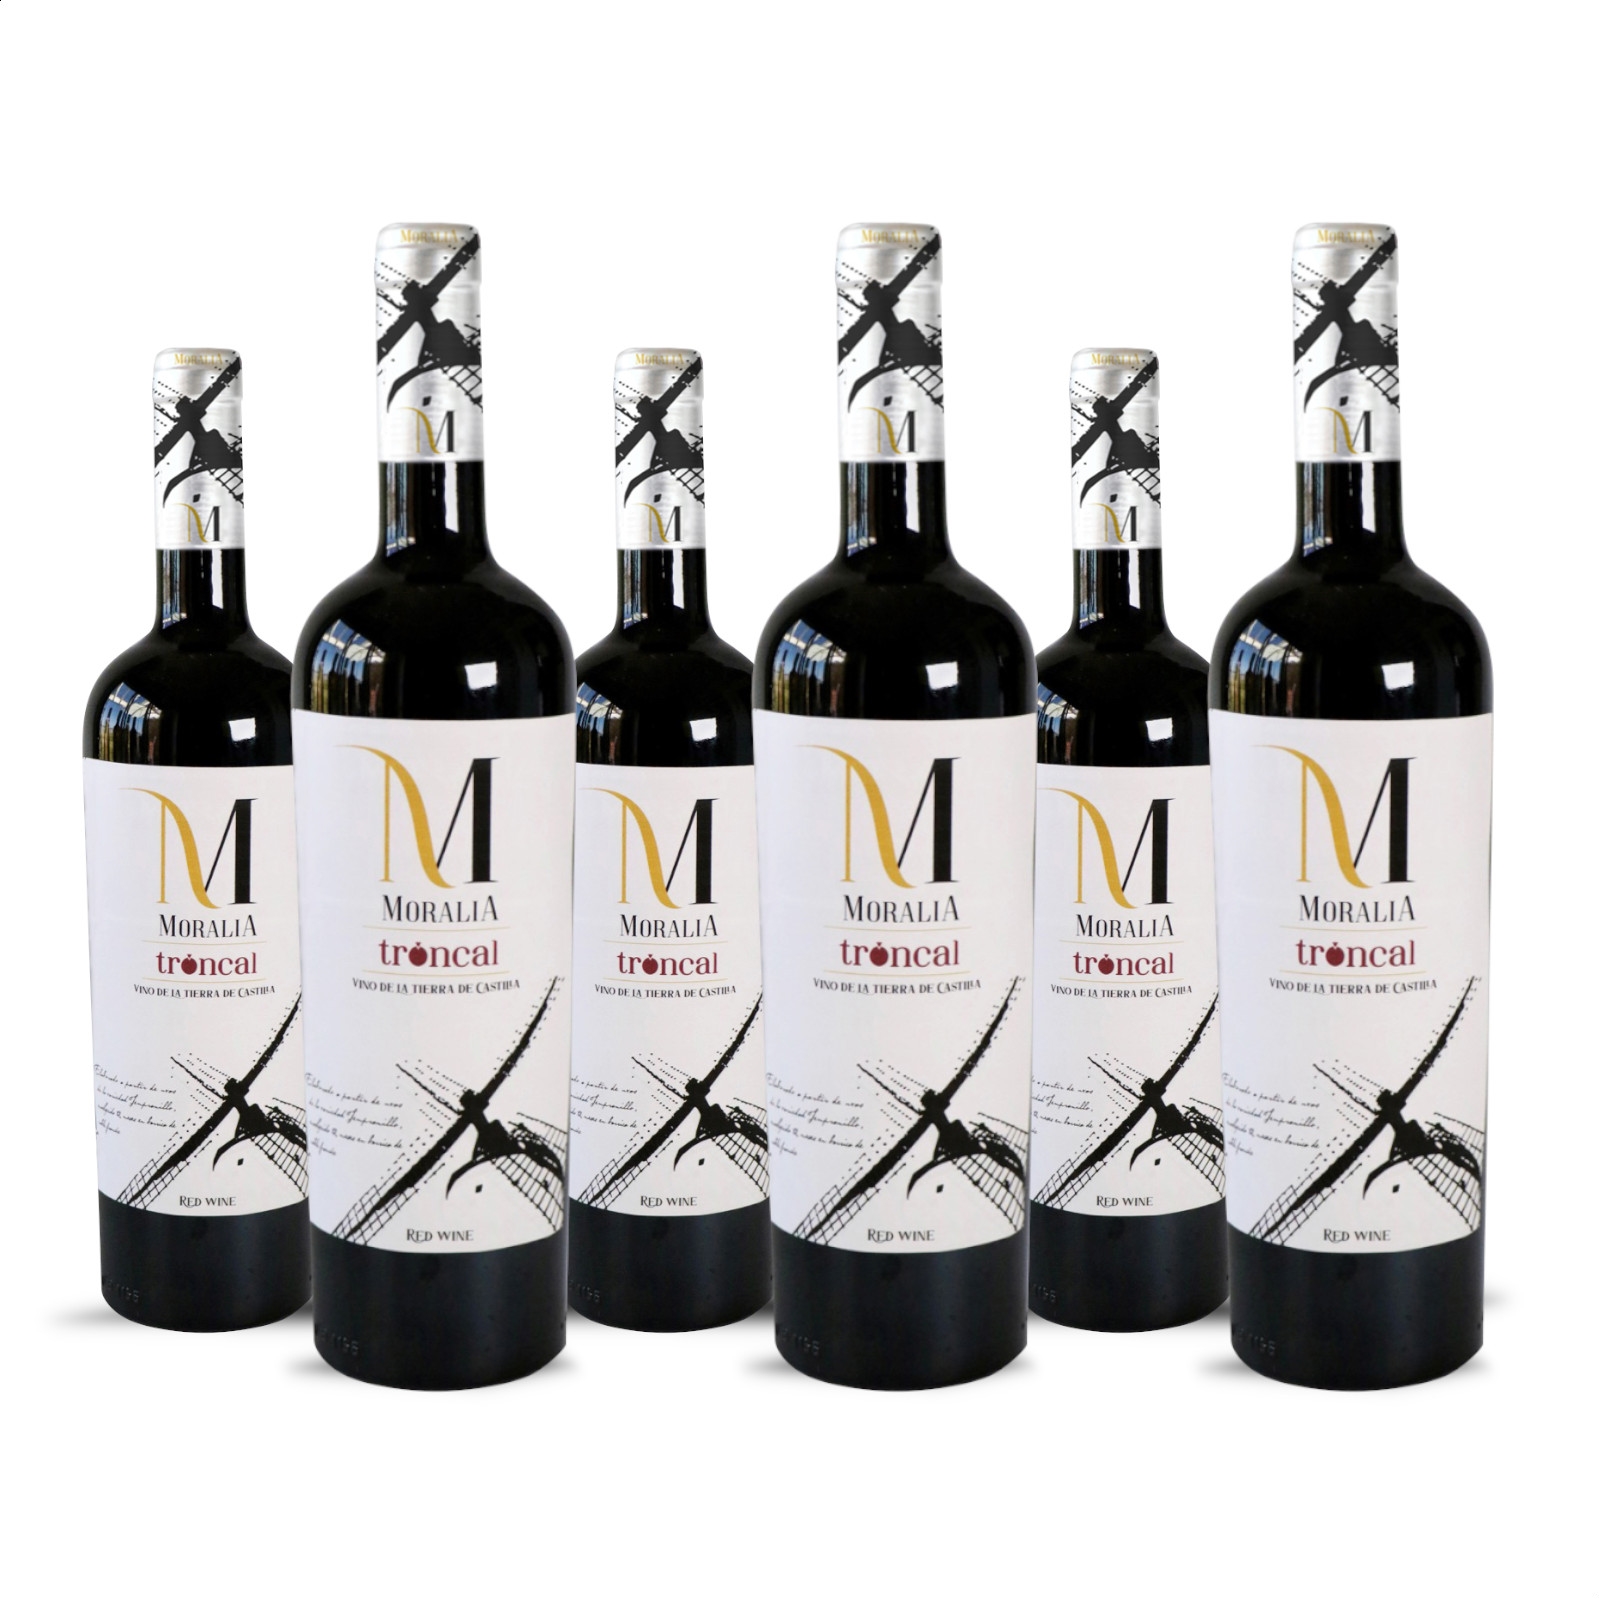 Moralia - Vino tinto Troncal IGP Vino de la Tierra de Castilla 75cl, 6uds